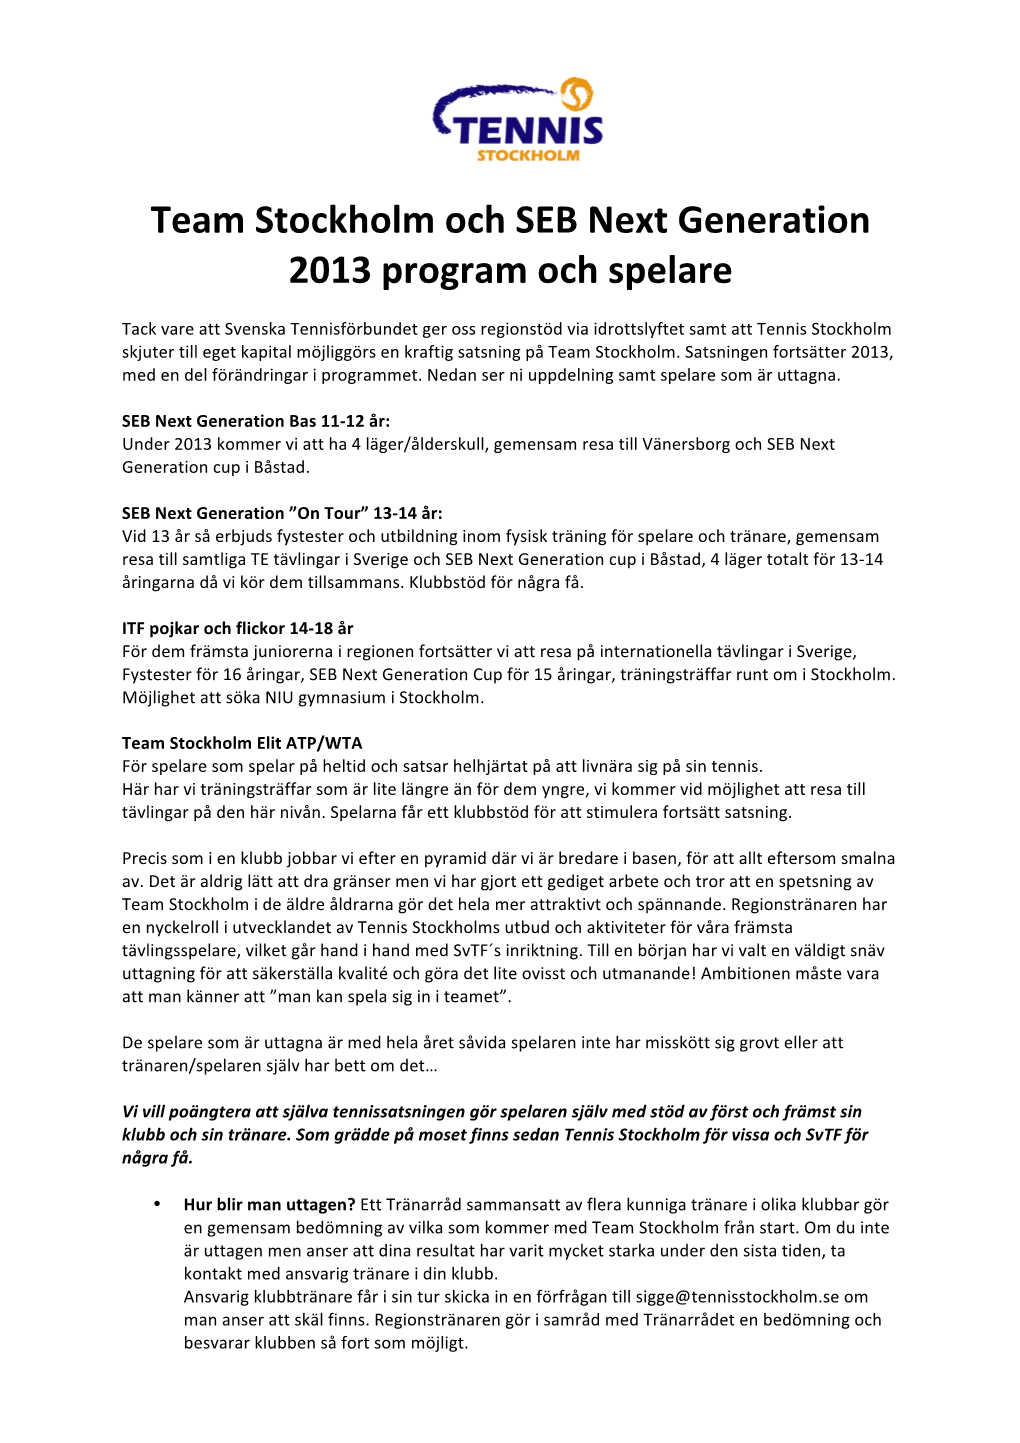 Team Stockholm Och SEB Next Generation 2013 Program Och Spelare